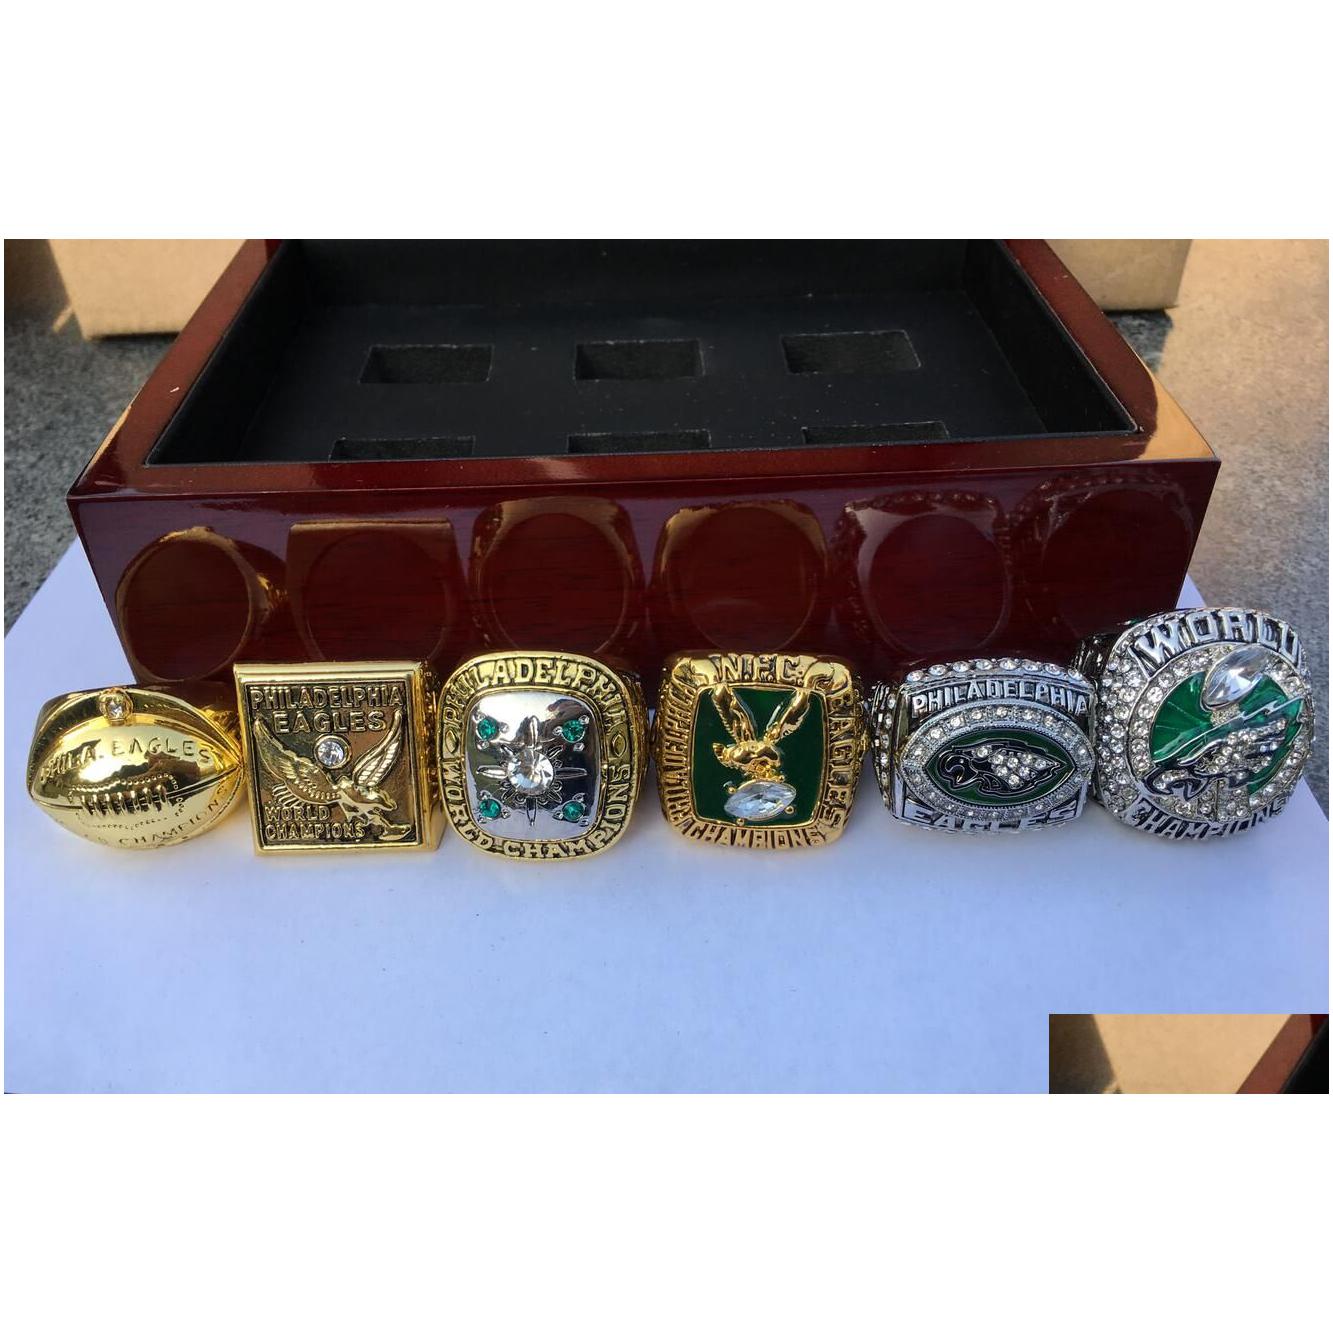 Philadelphia 6 peças águia equipe de futebol americano campeões campeonato anel conjunto com caixa de madeira lembrança homens fã presente entrega direta dhlfs